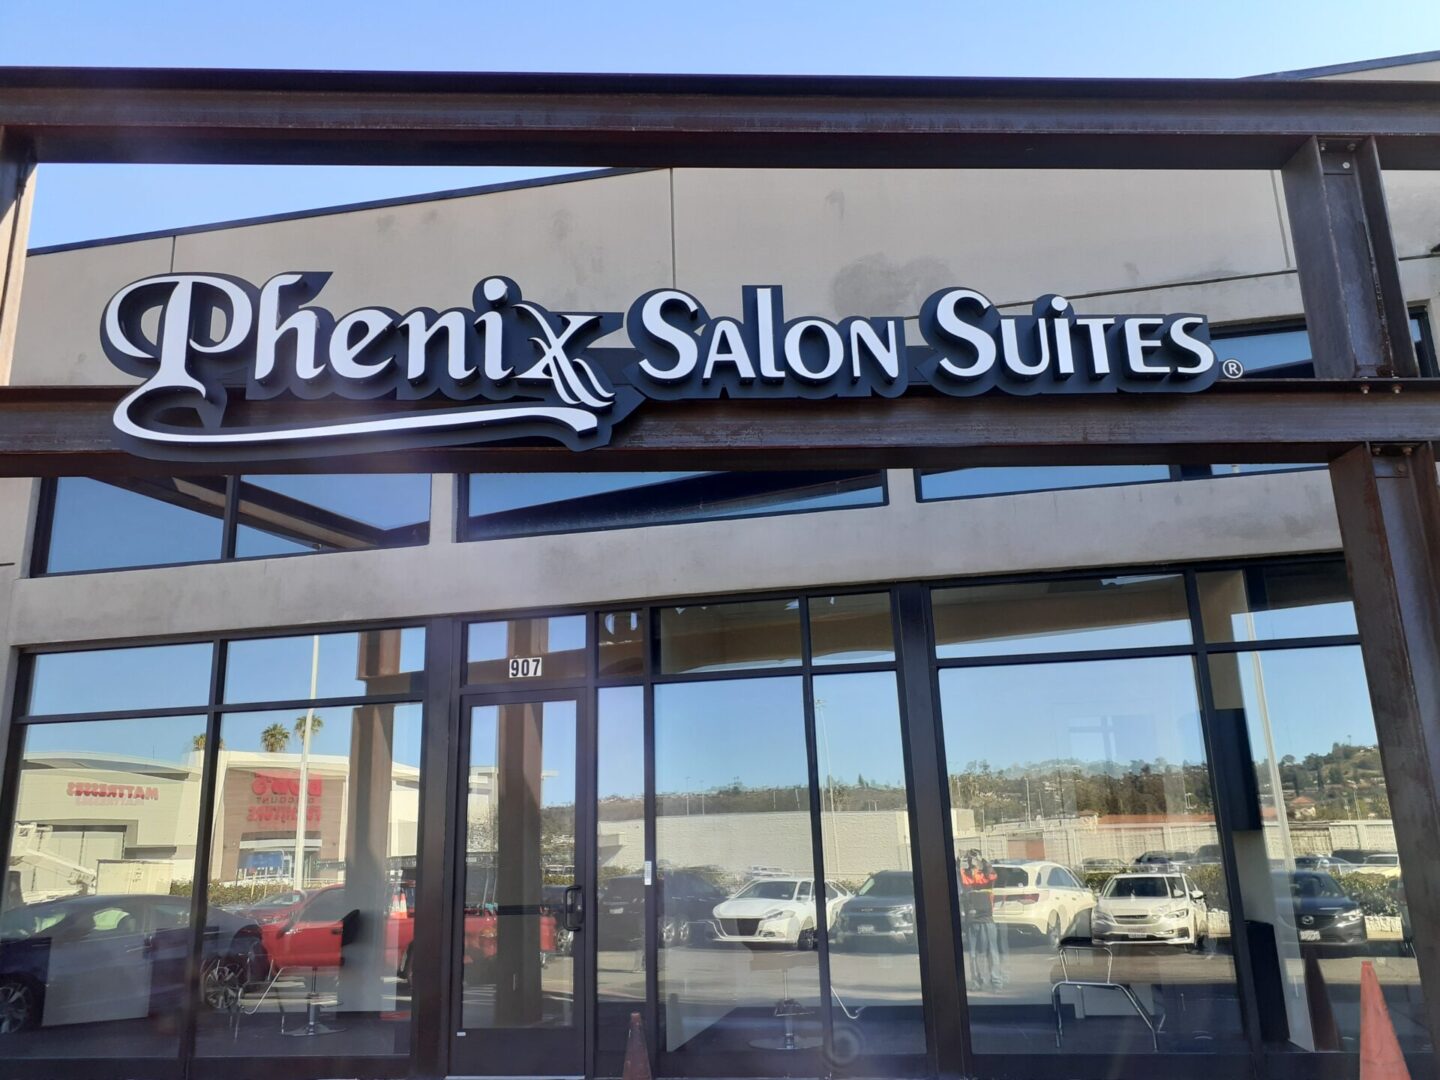 Stylized signage of Phenix Salon Suites